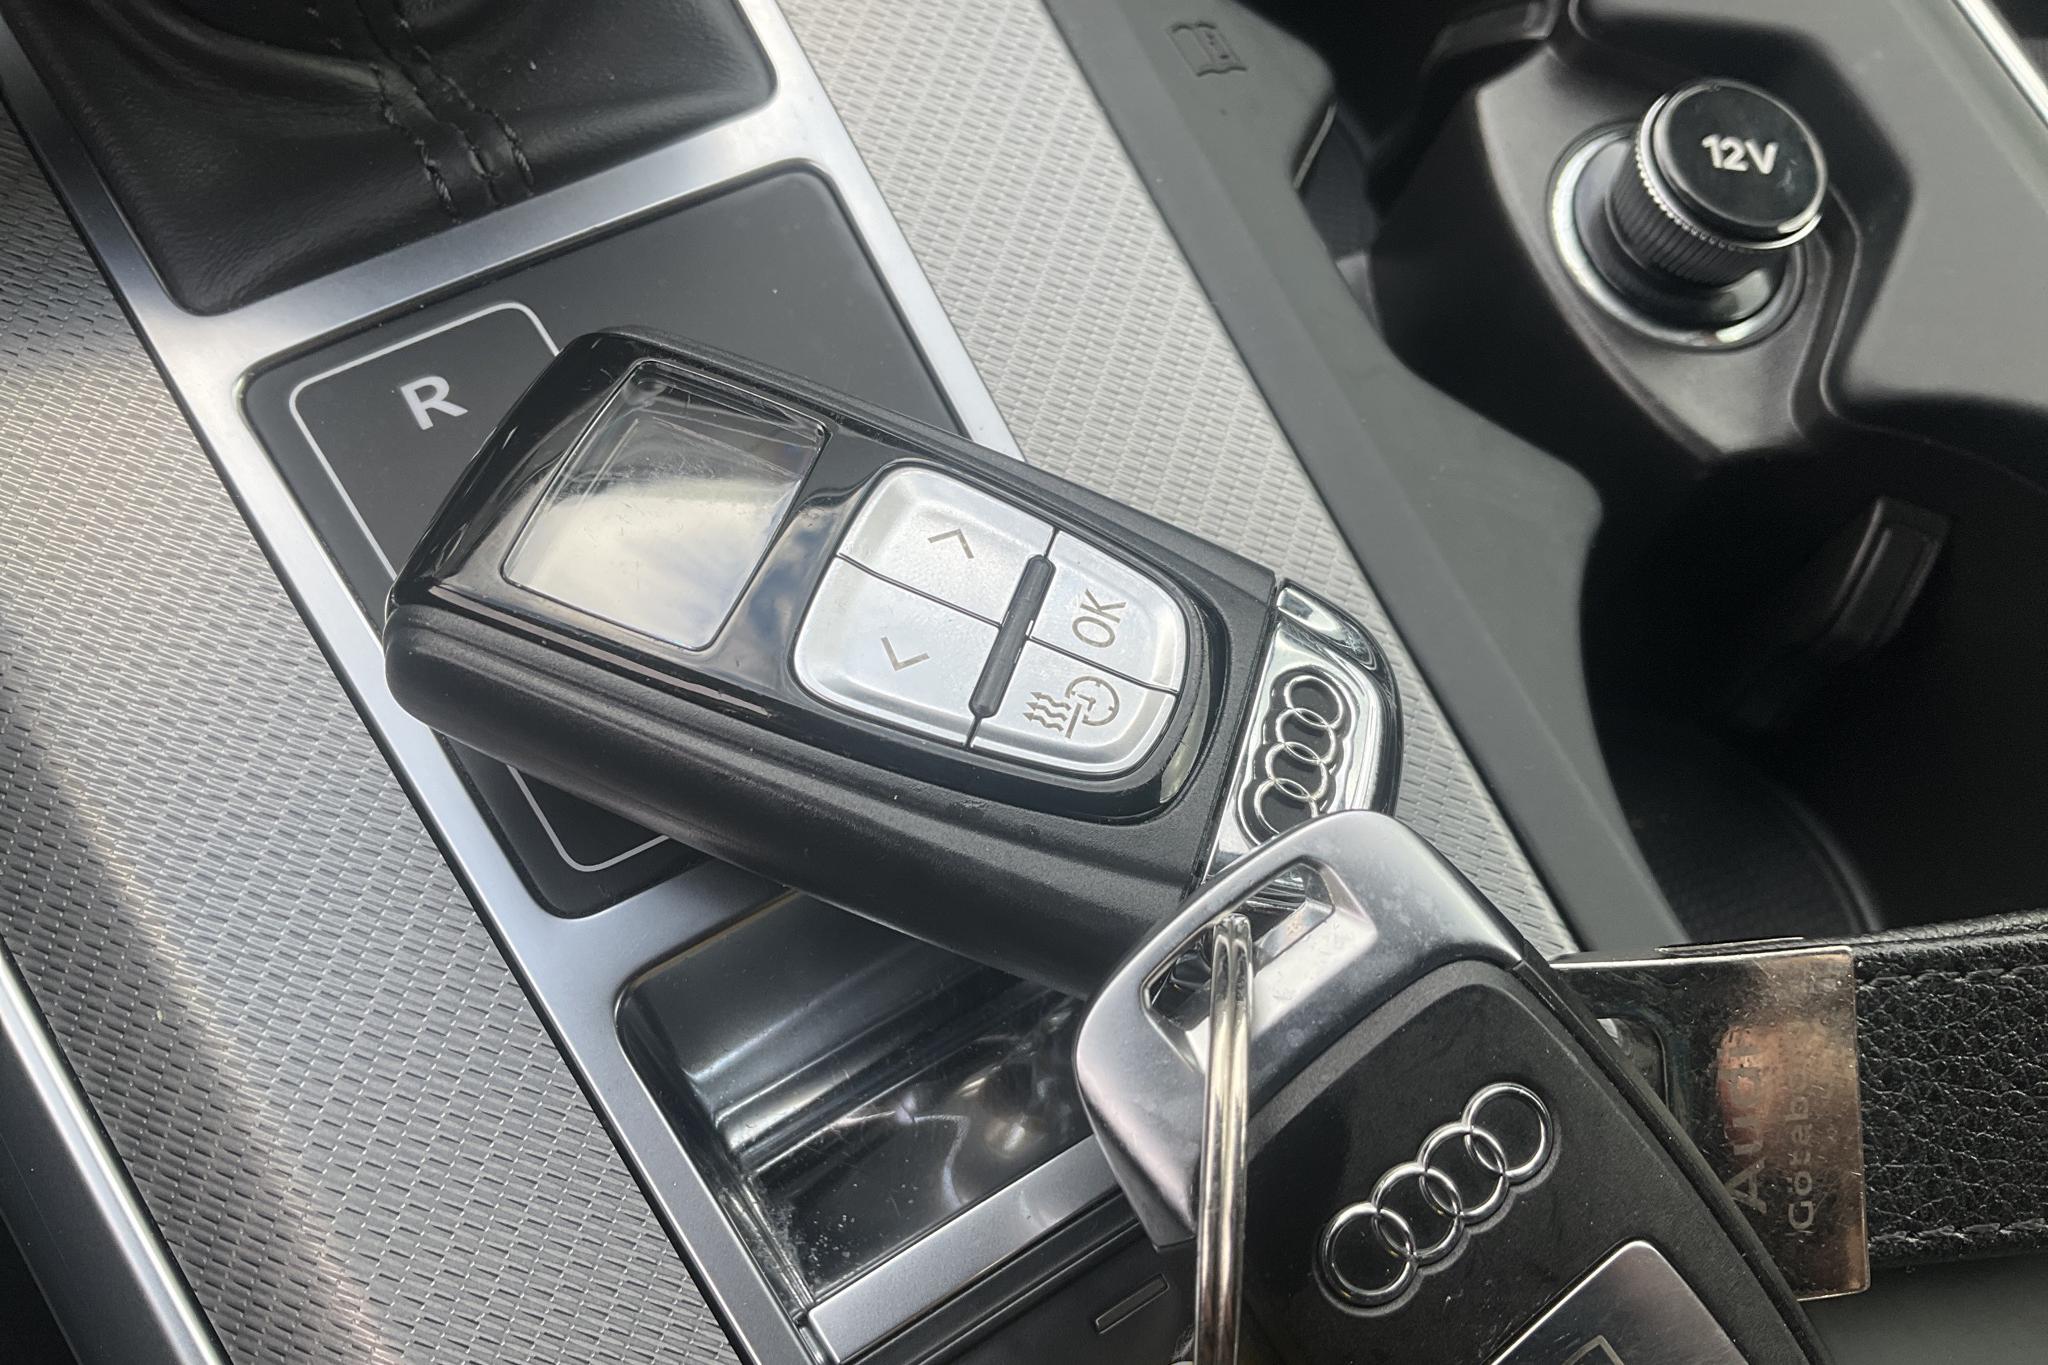 Audi A6 Avant 45 TFSI quattro (245hk) - 80 690 km - Automatic - white - 2019